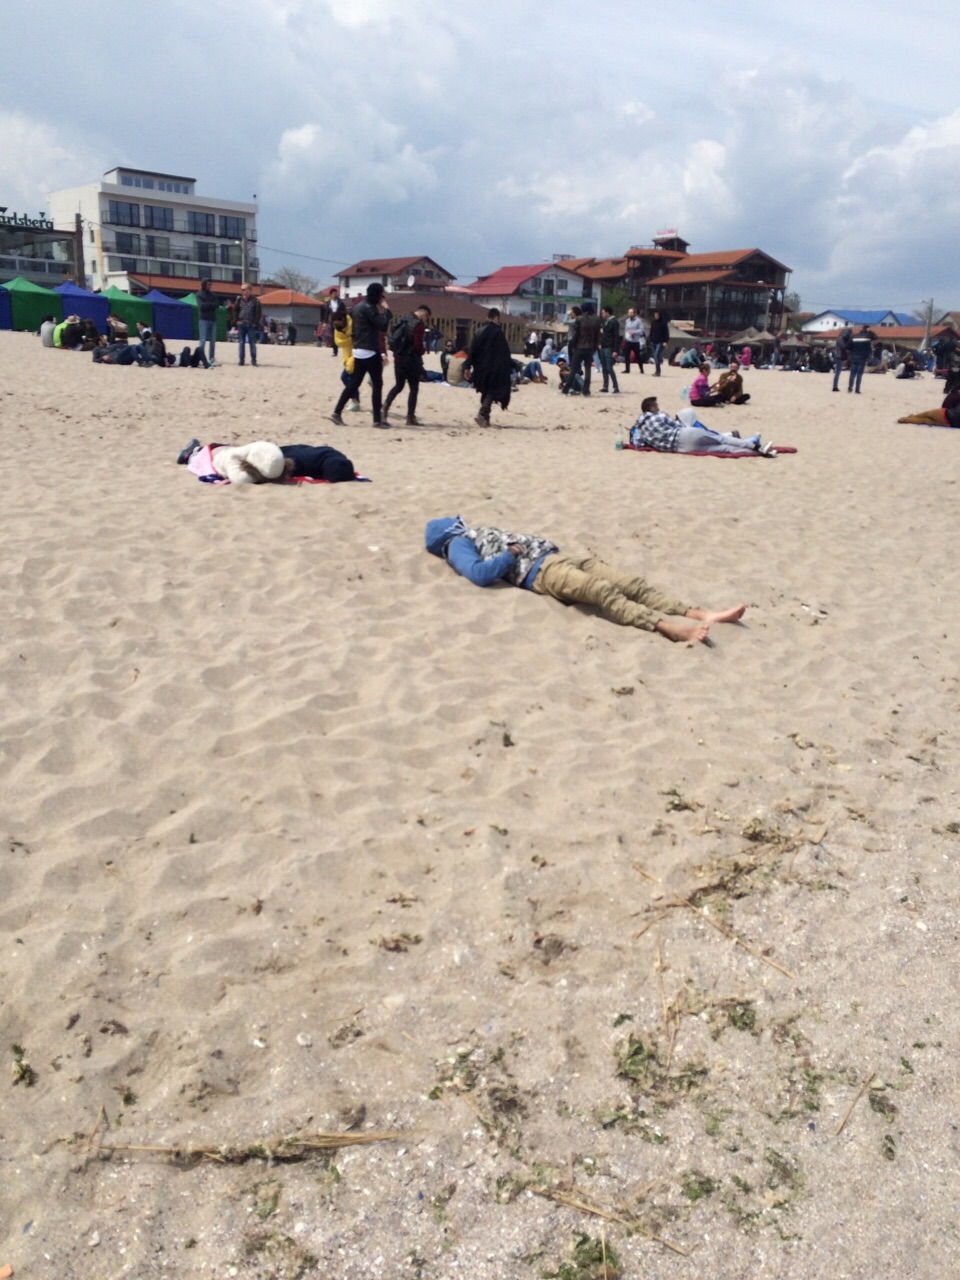 Ametit de la alcool, tanarul a adormit pe plaja chiar daca afara era foarte frig